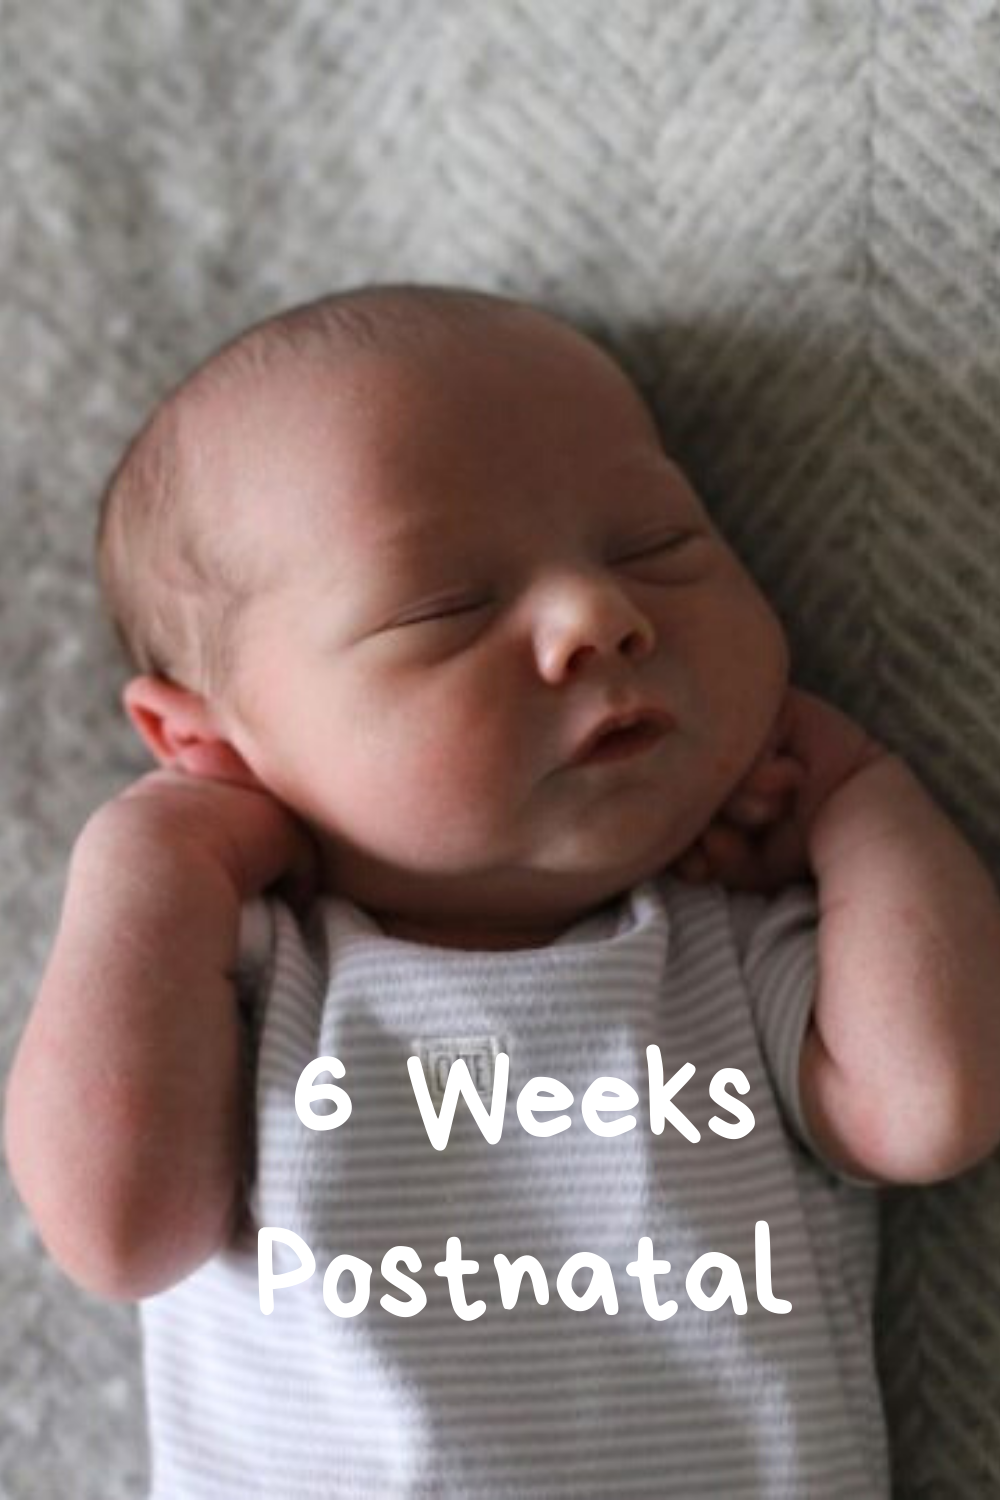 6 weeks postnatal